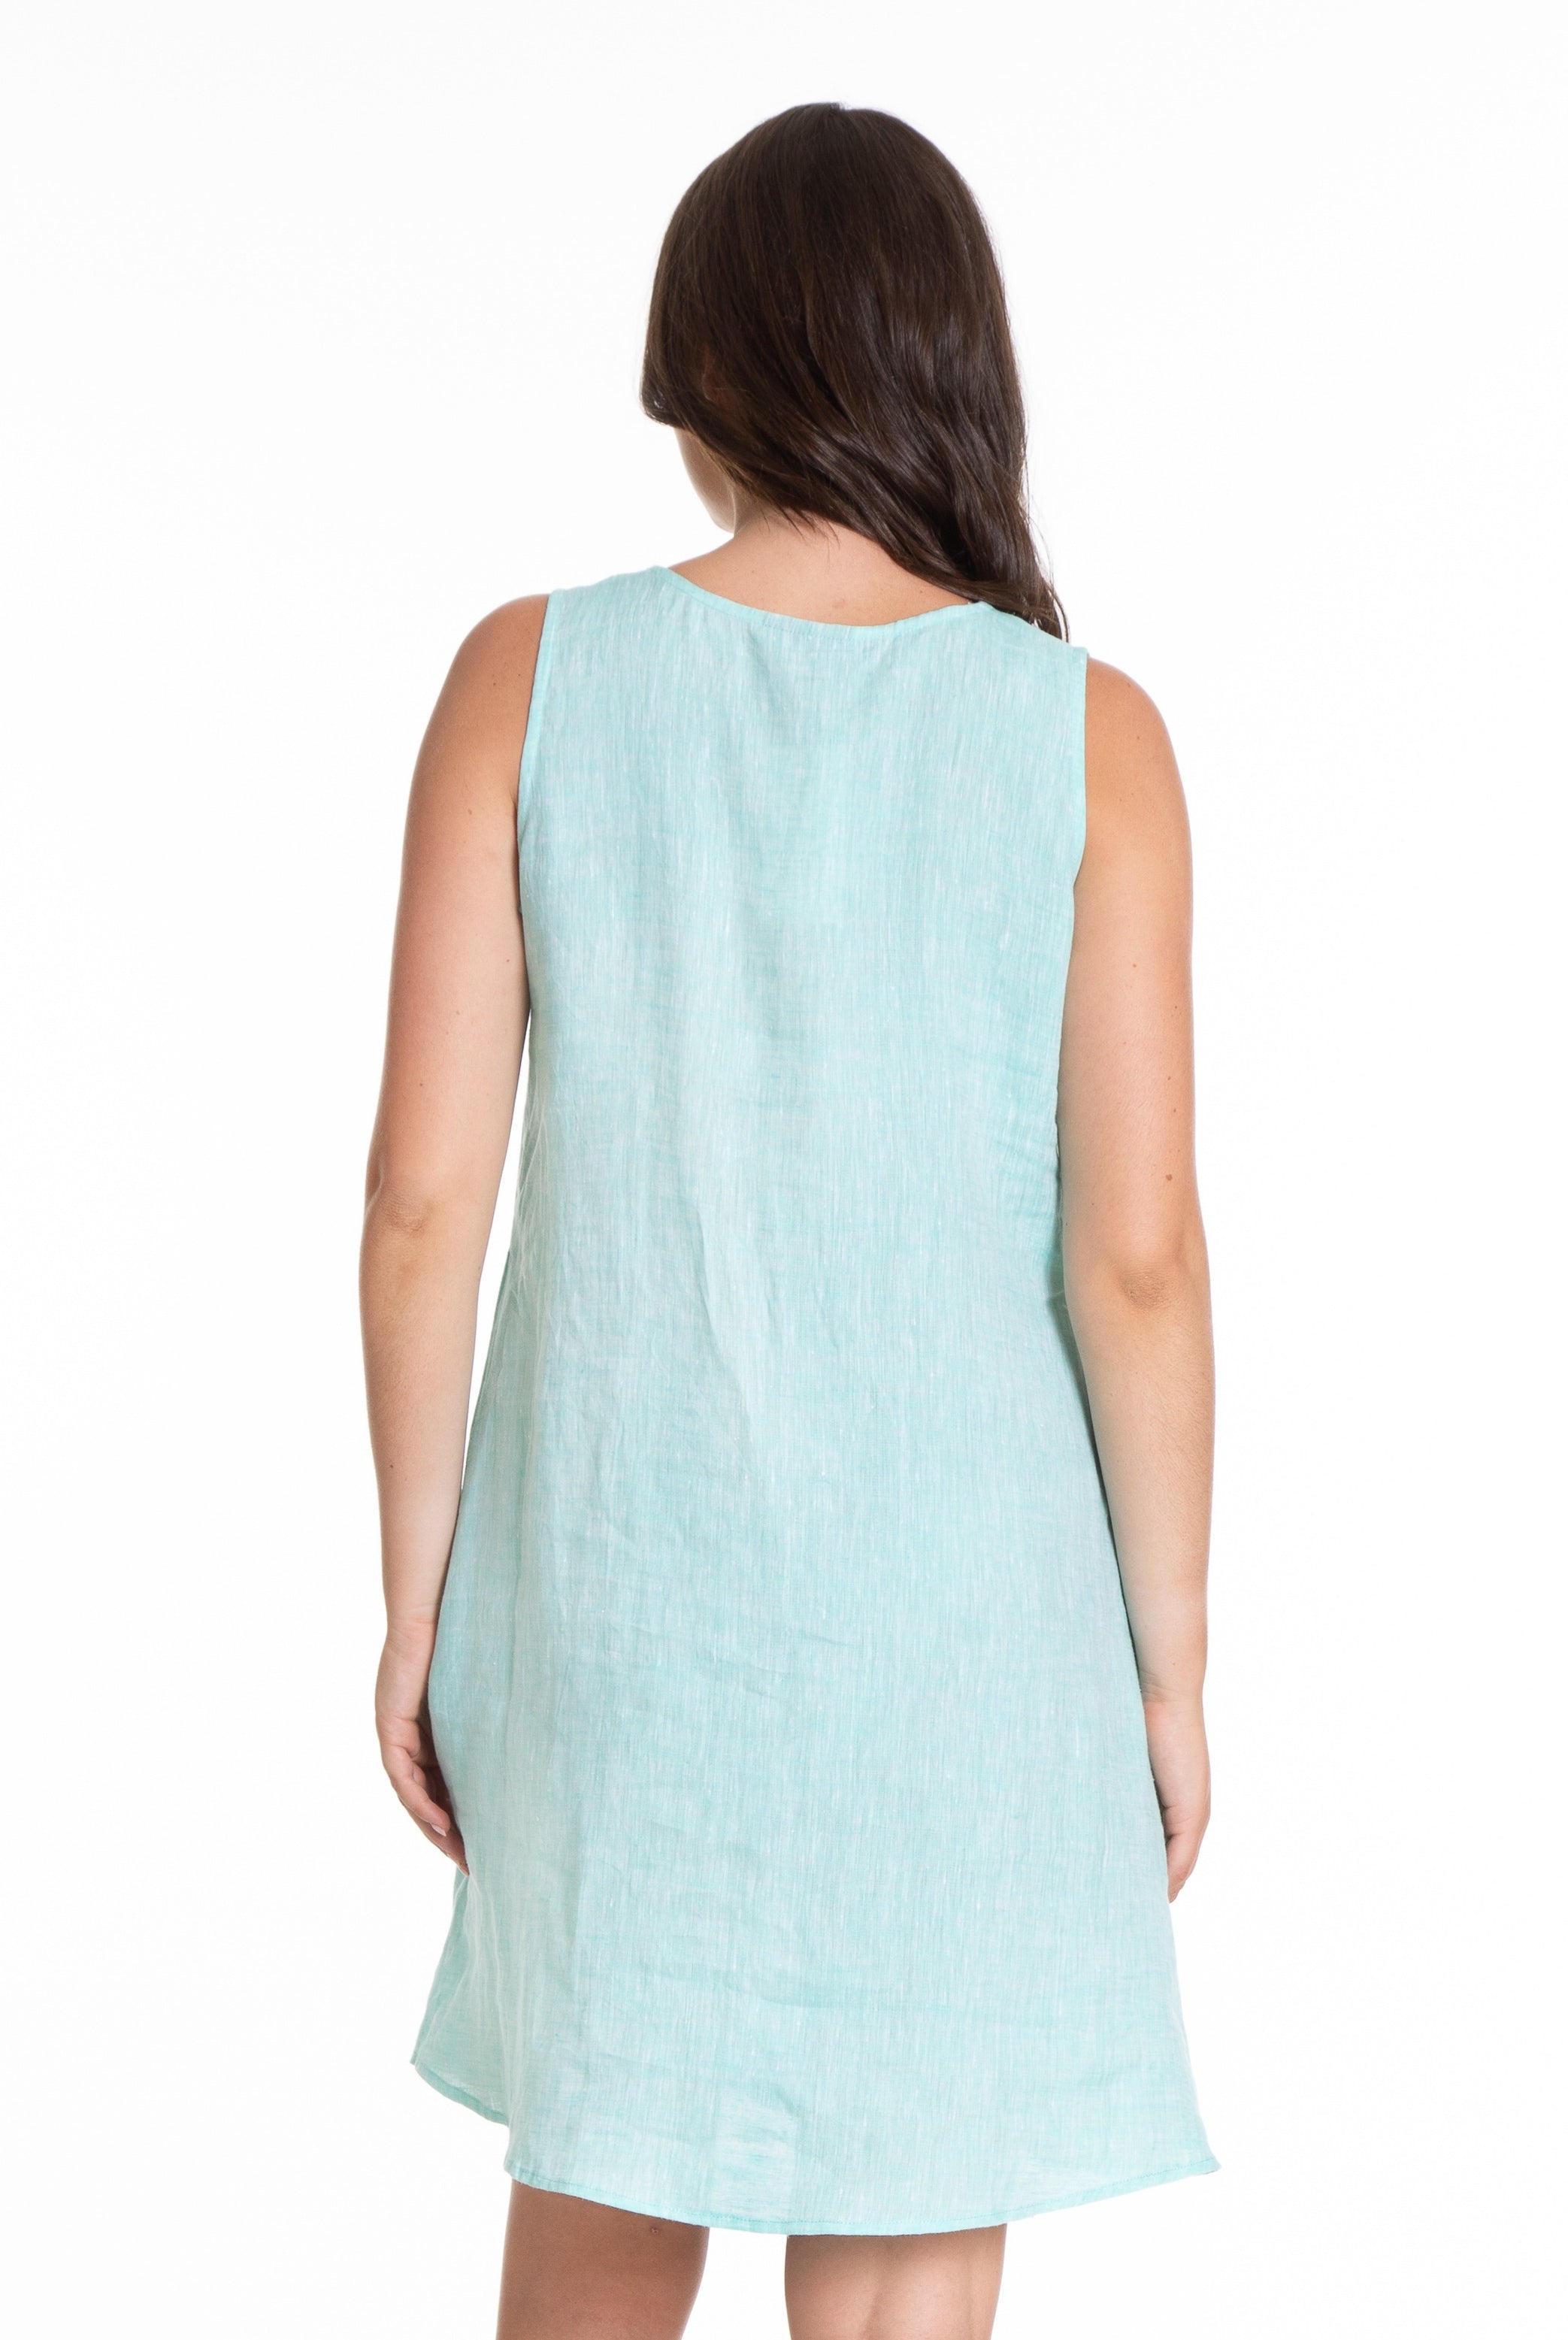 Sleeveless V-Neck Dress Turquoise Back APNY